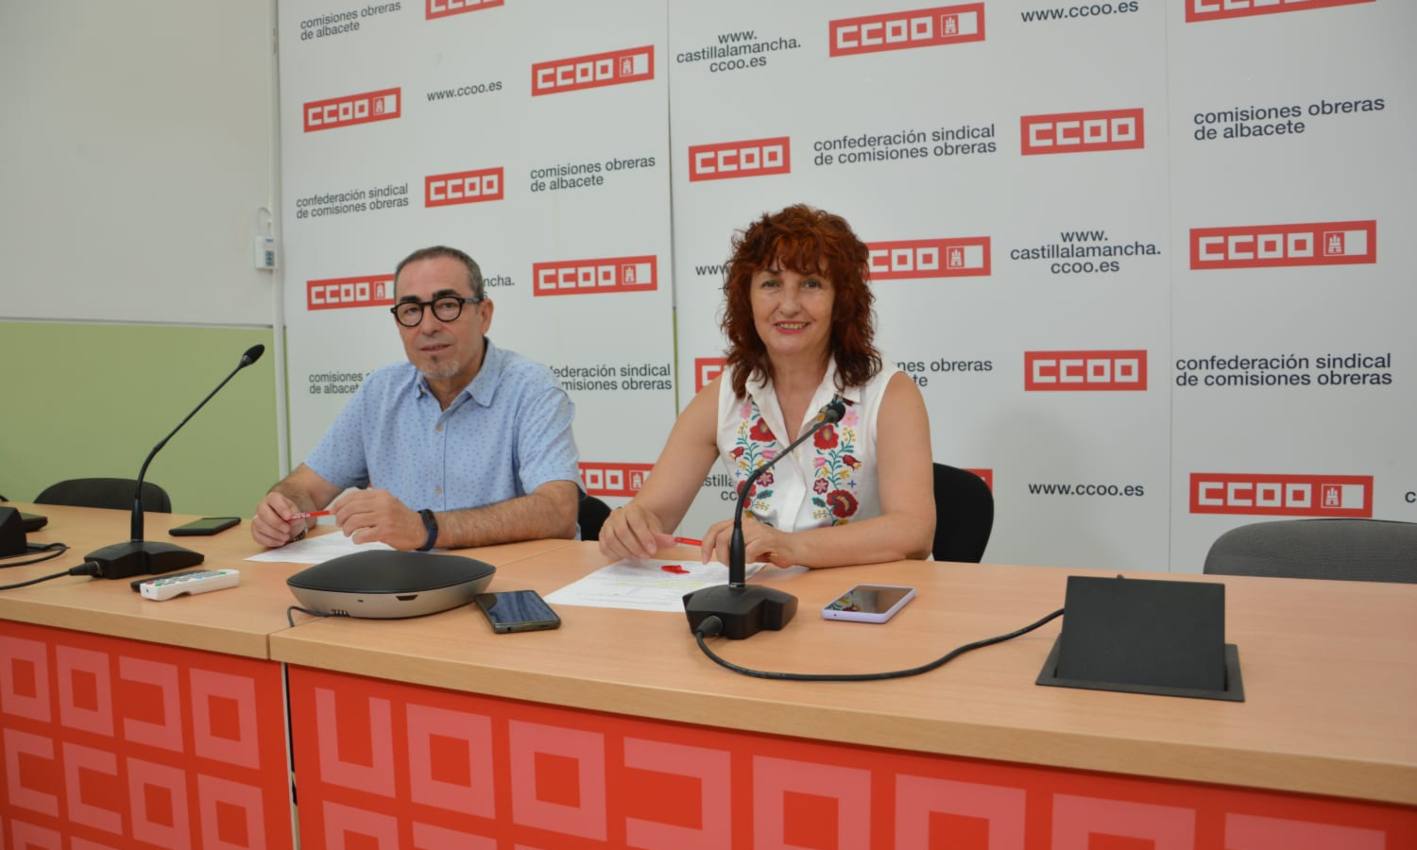 CCOO CLM critica la alta temporalidad del empleo público y exige a los ayuntamientos convocar procesos de estabilización.